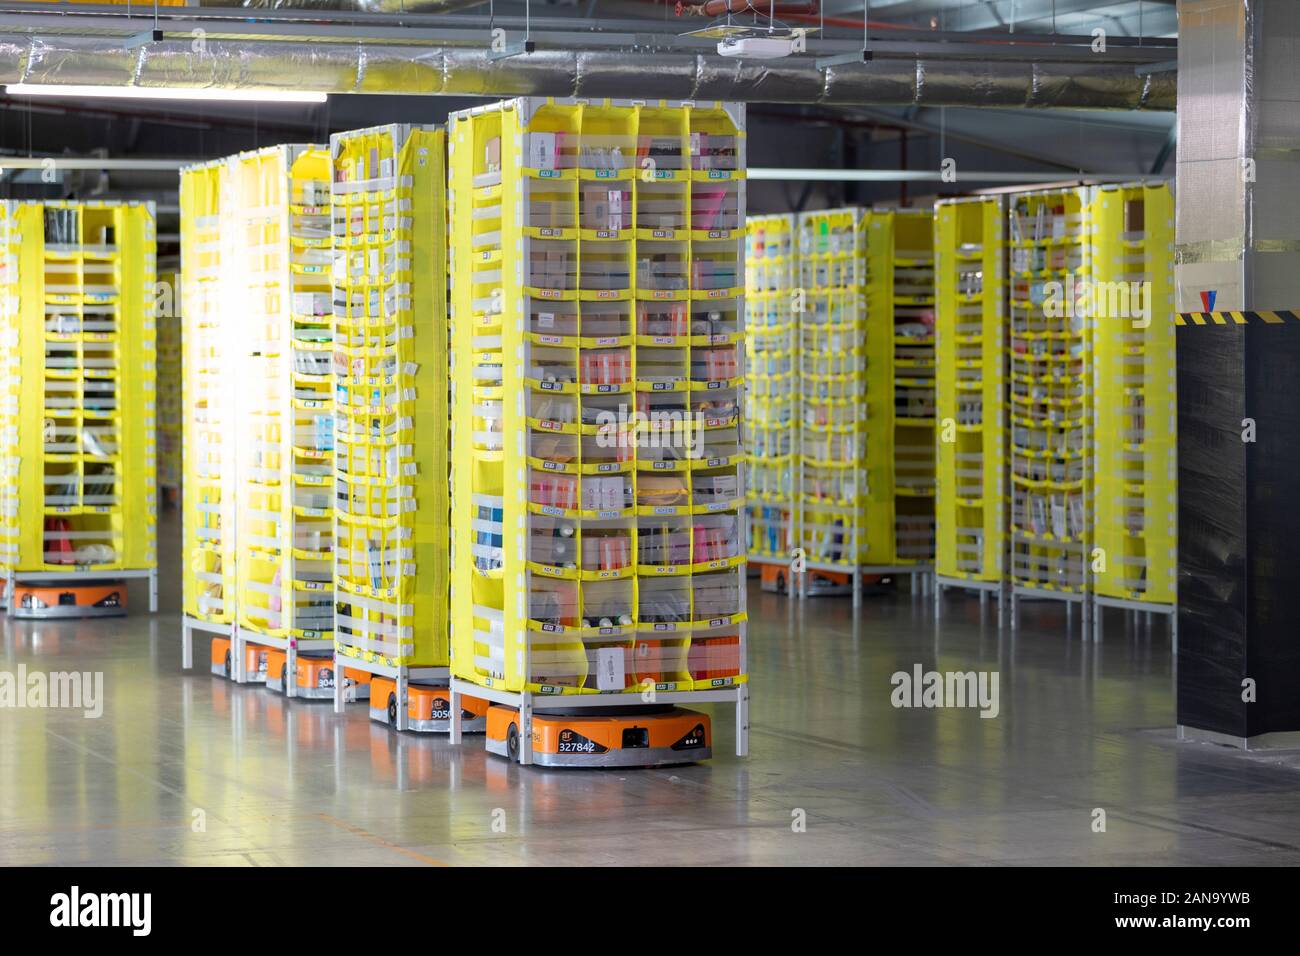 Robot AmazonRobotics al Amazon Distribution Center LCY2 di Tilbury, Essex, Regno Unito - 16 Gennaio 2020 Foto Stock